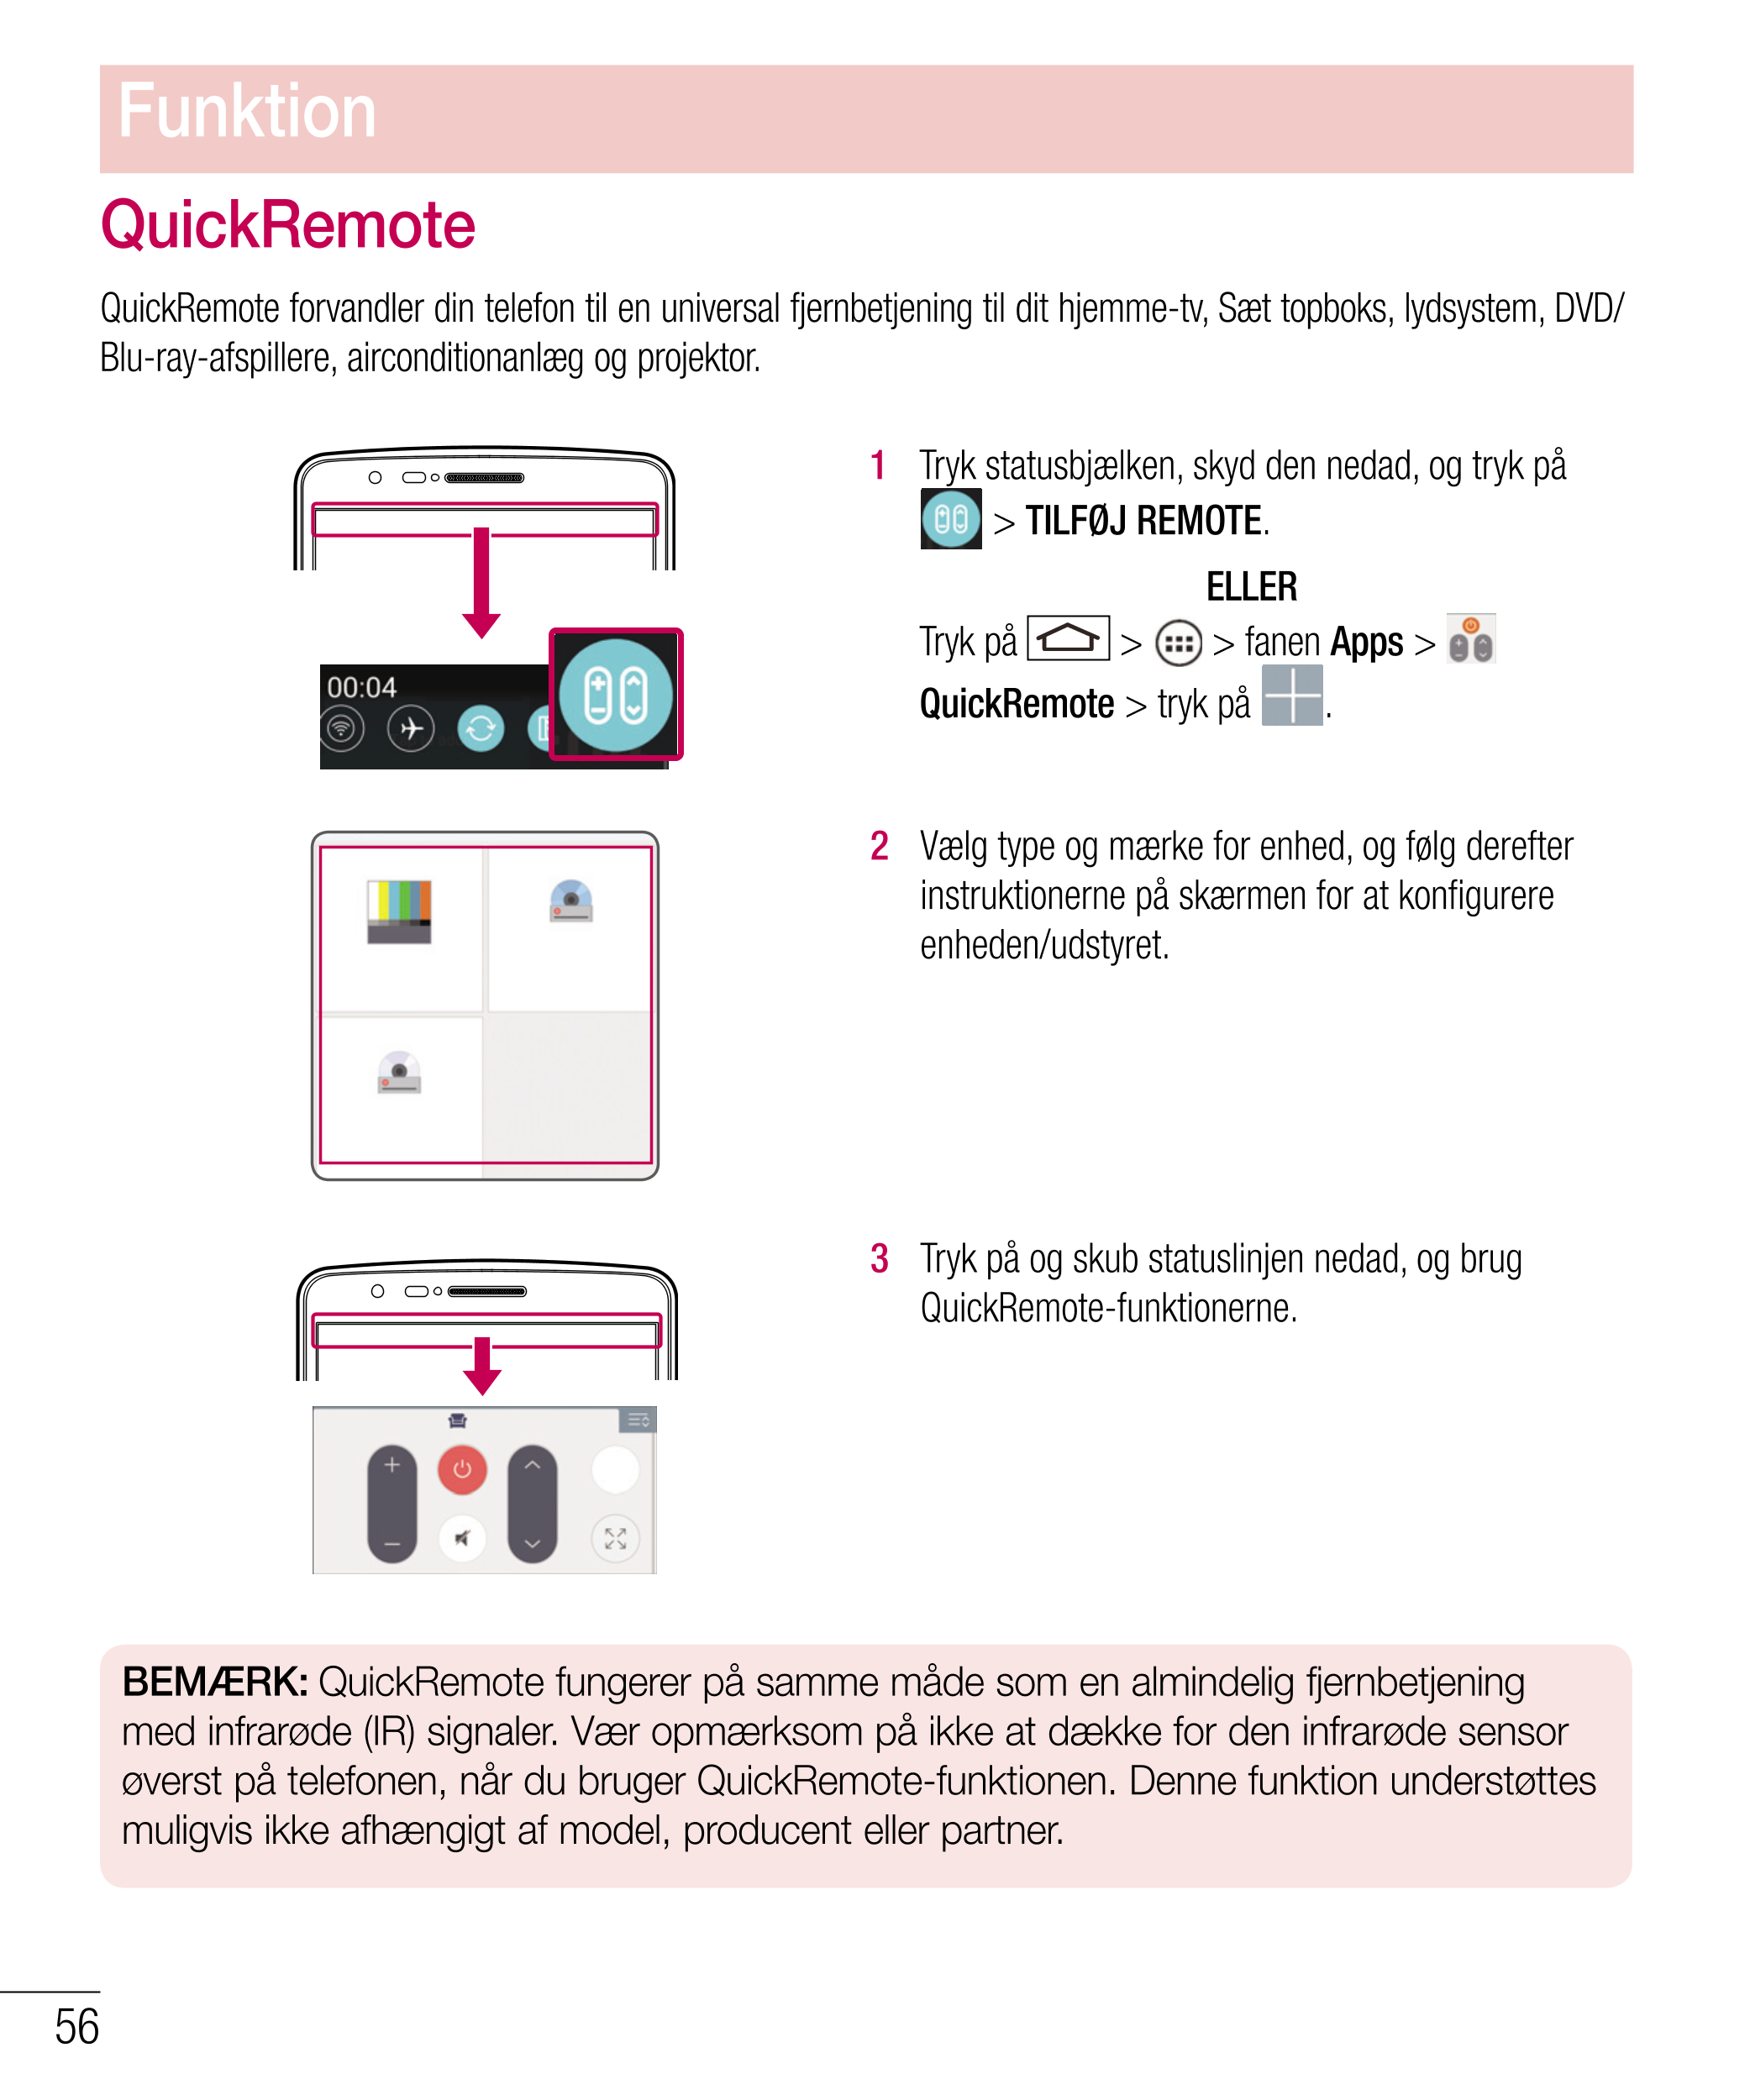 Funktion
QuickRemote
QuickRemote forvandler din telefon til en universal fjernbetjening til dit hjemme-tv, Sæt topboks, lydsyste